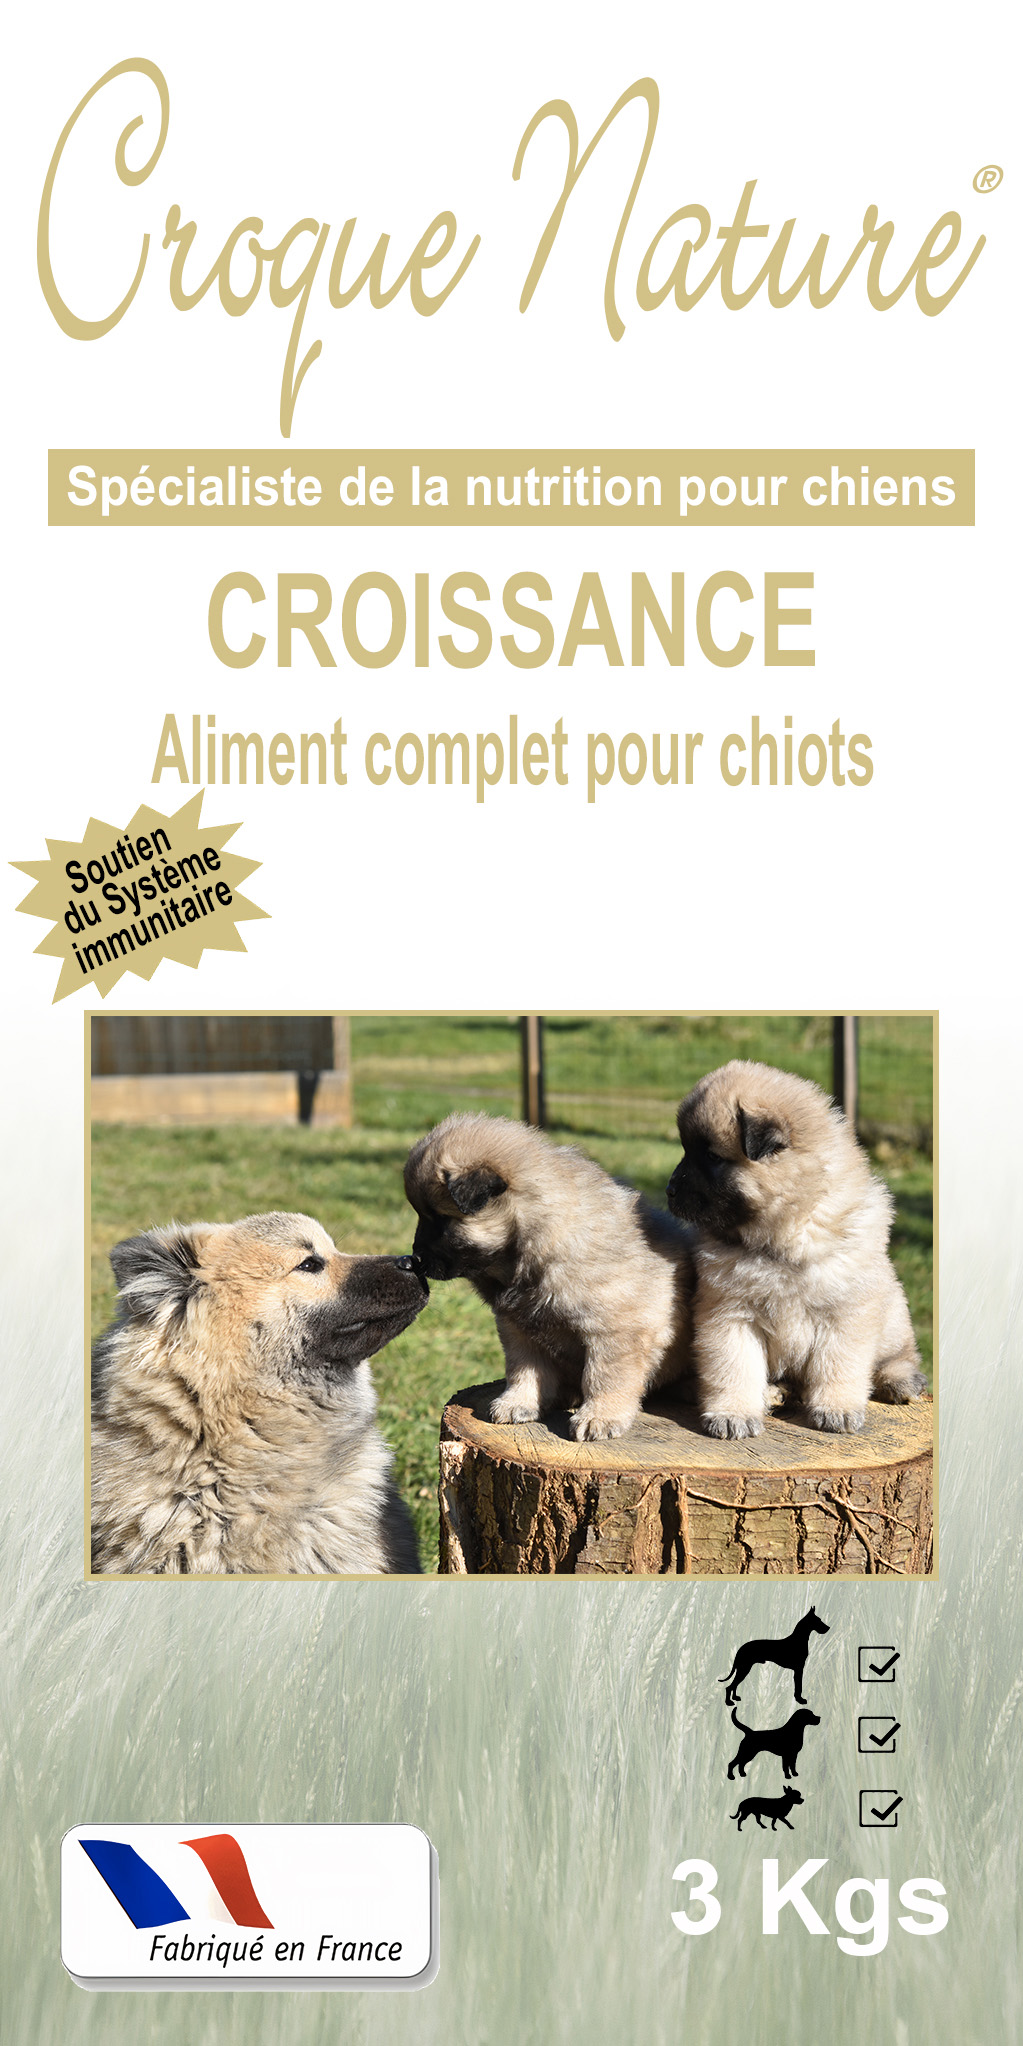 CROQUETTES CHIOT CROISSANCE PARIS 5